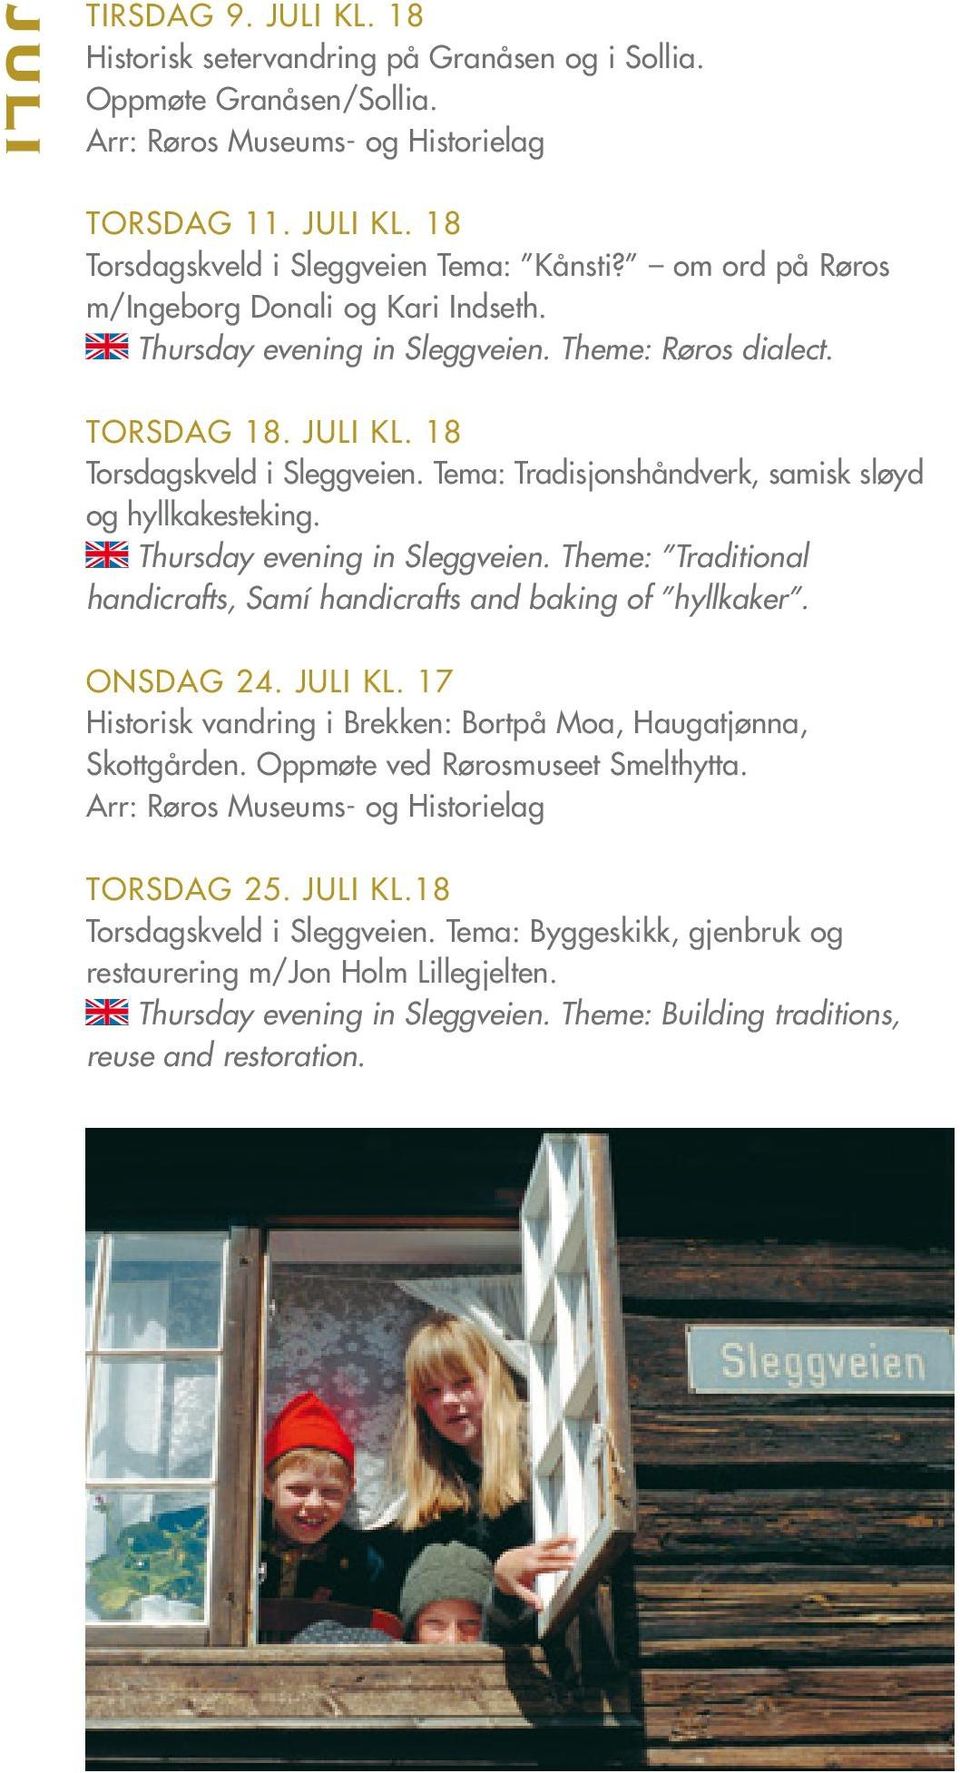 Tema: Tradisjonshåndverk, samisk sløyd og hyllkakesteking. Thursday evening in Sleggveien. Theme: Traditional handicrafts, Samí handicrafts and baking of hyllkaker. ONSDAG 24. JULI Kl.